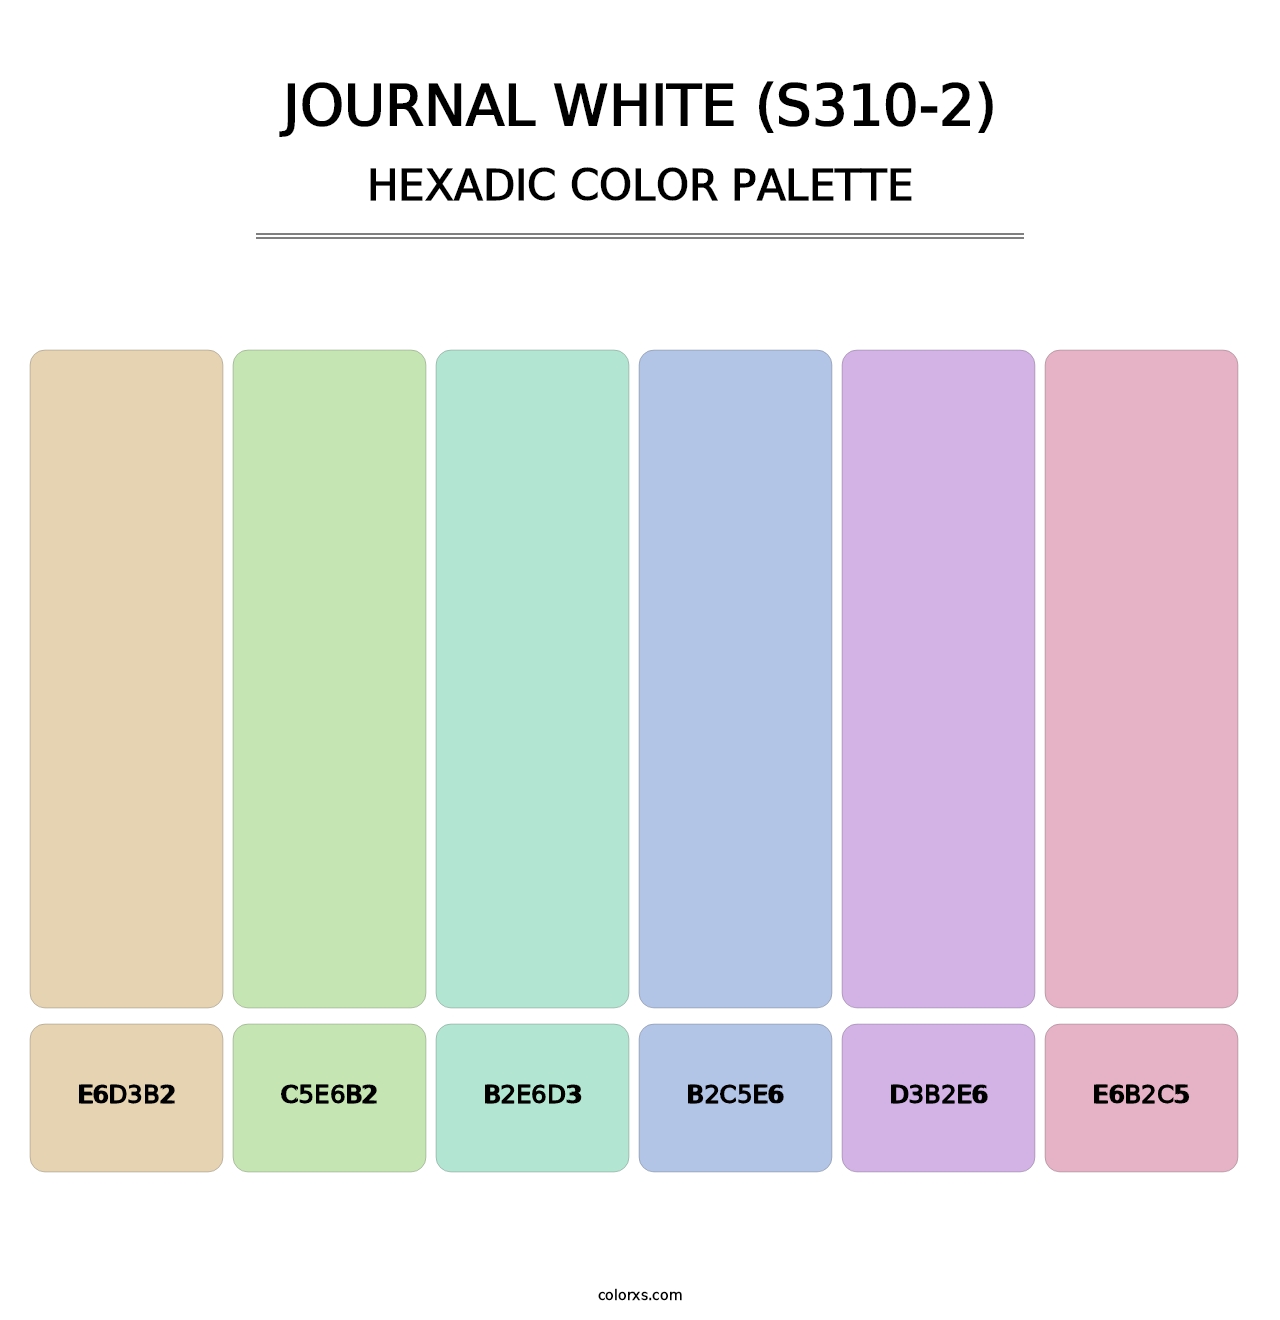 Journal White (S310-2) - Hexadic Color Palette